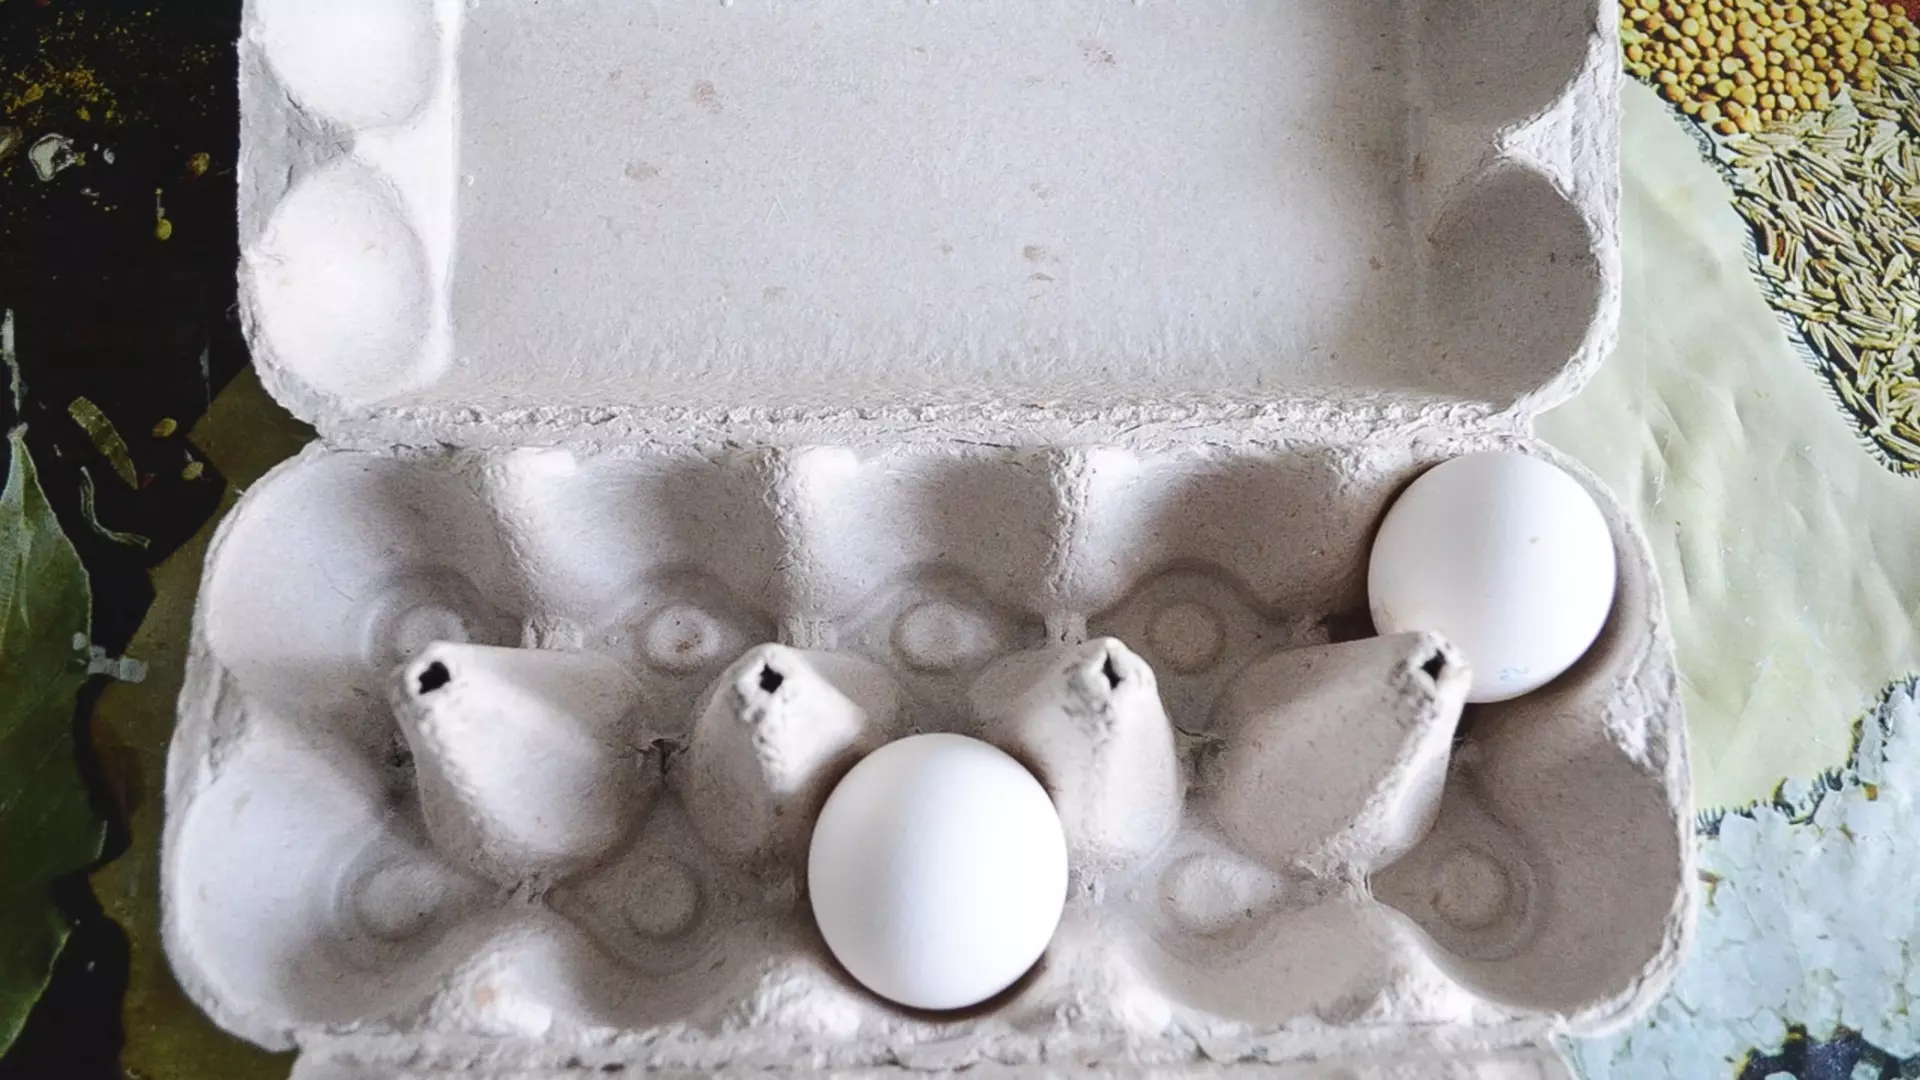 Цены на яйца в Удмуртии растут, несмотря на попытки властей сдержать подорожание